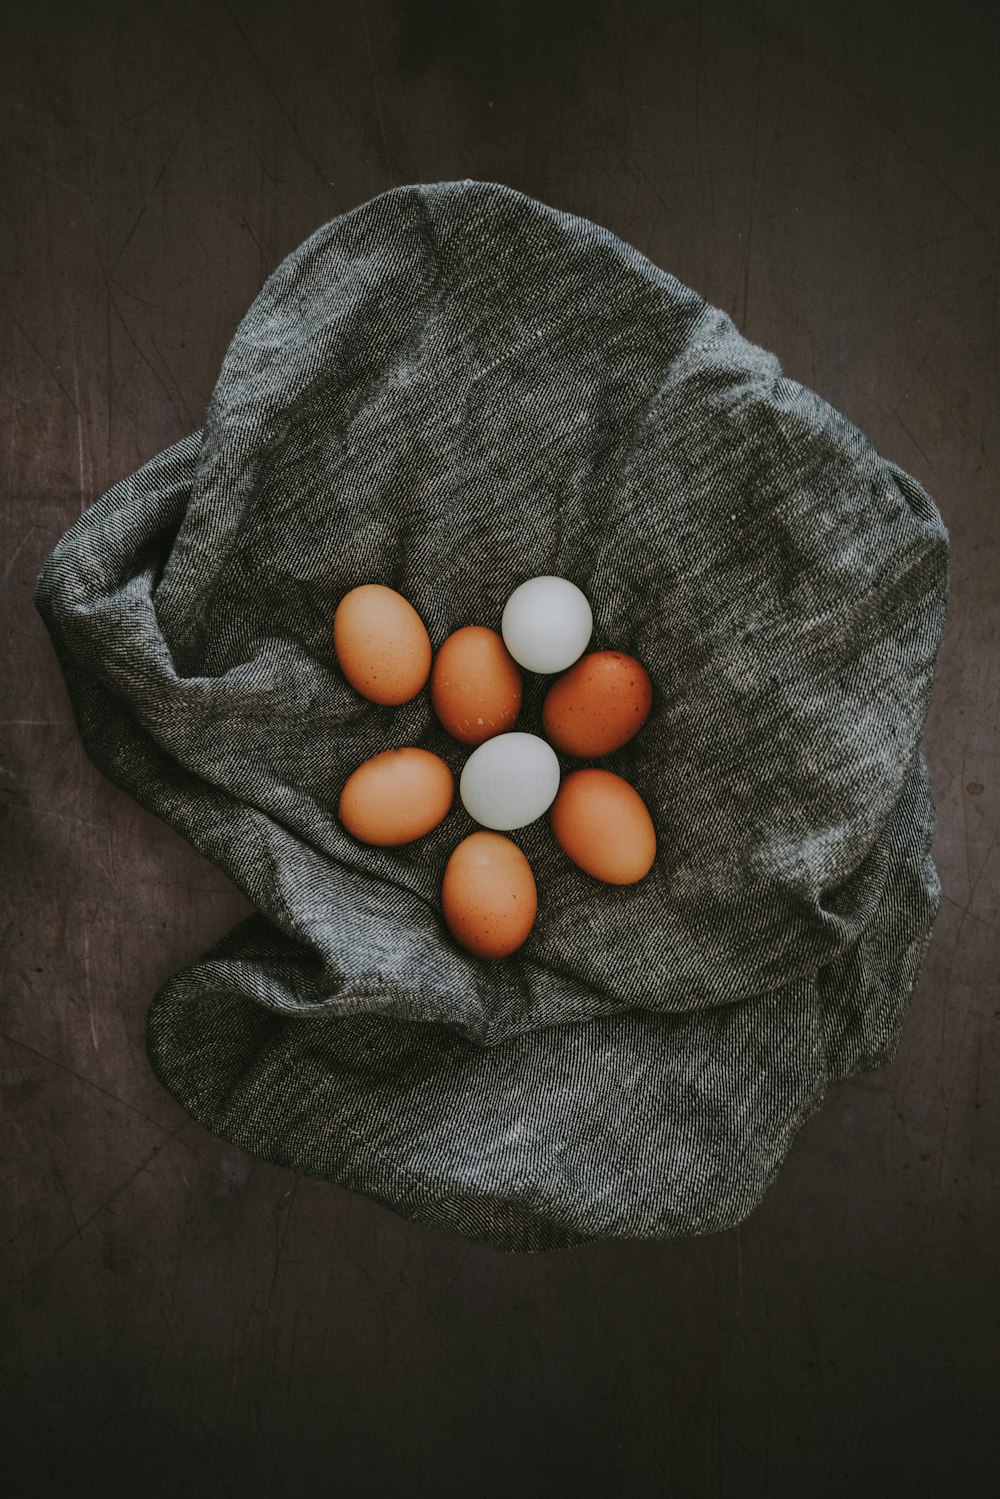 Lote de ovos brancos e marrons em tecido cinzento